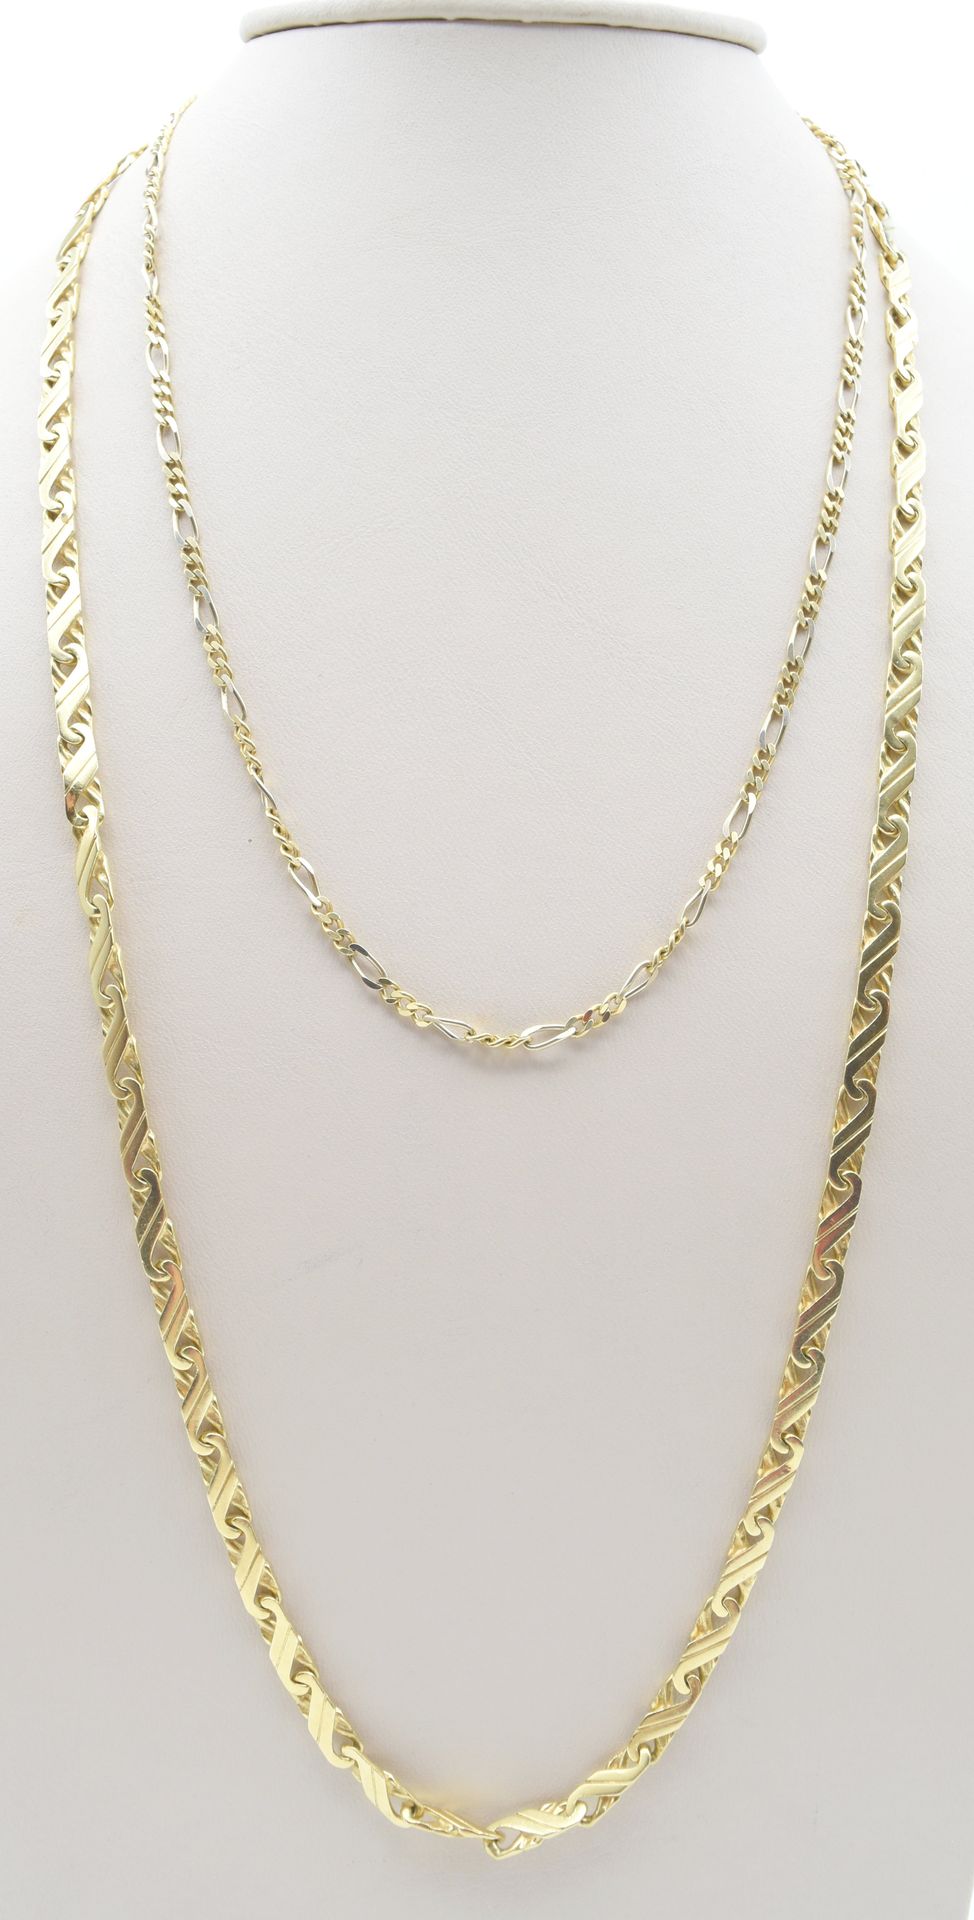 Null 2 collares de oro amarillo y blanco de 18 ct - 70,6 g (90 y 45 cm) 

Descri&hellip;